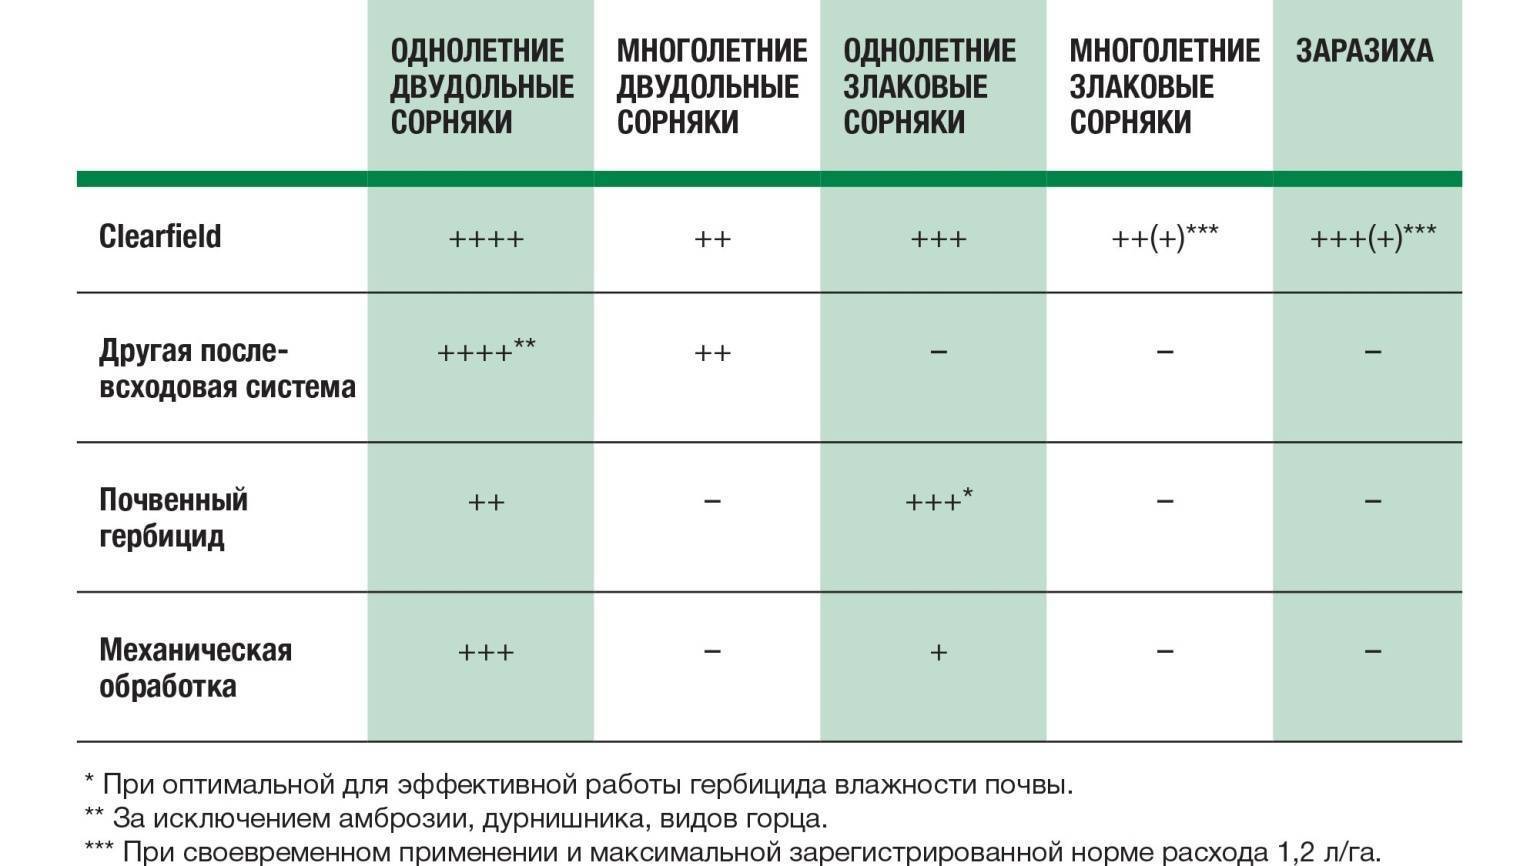 Инструкция по применению и состав гербицида евролэнд, дозировка и аналоги